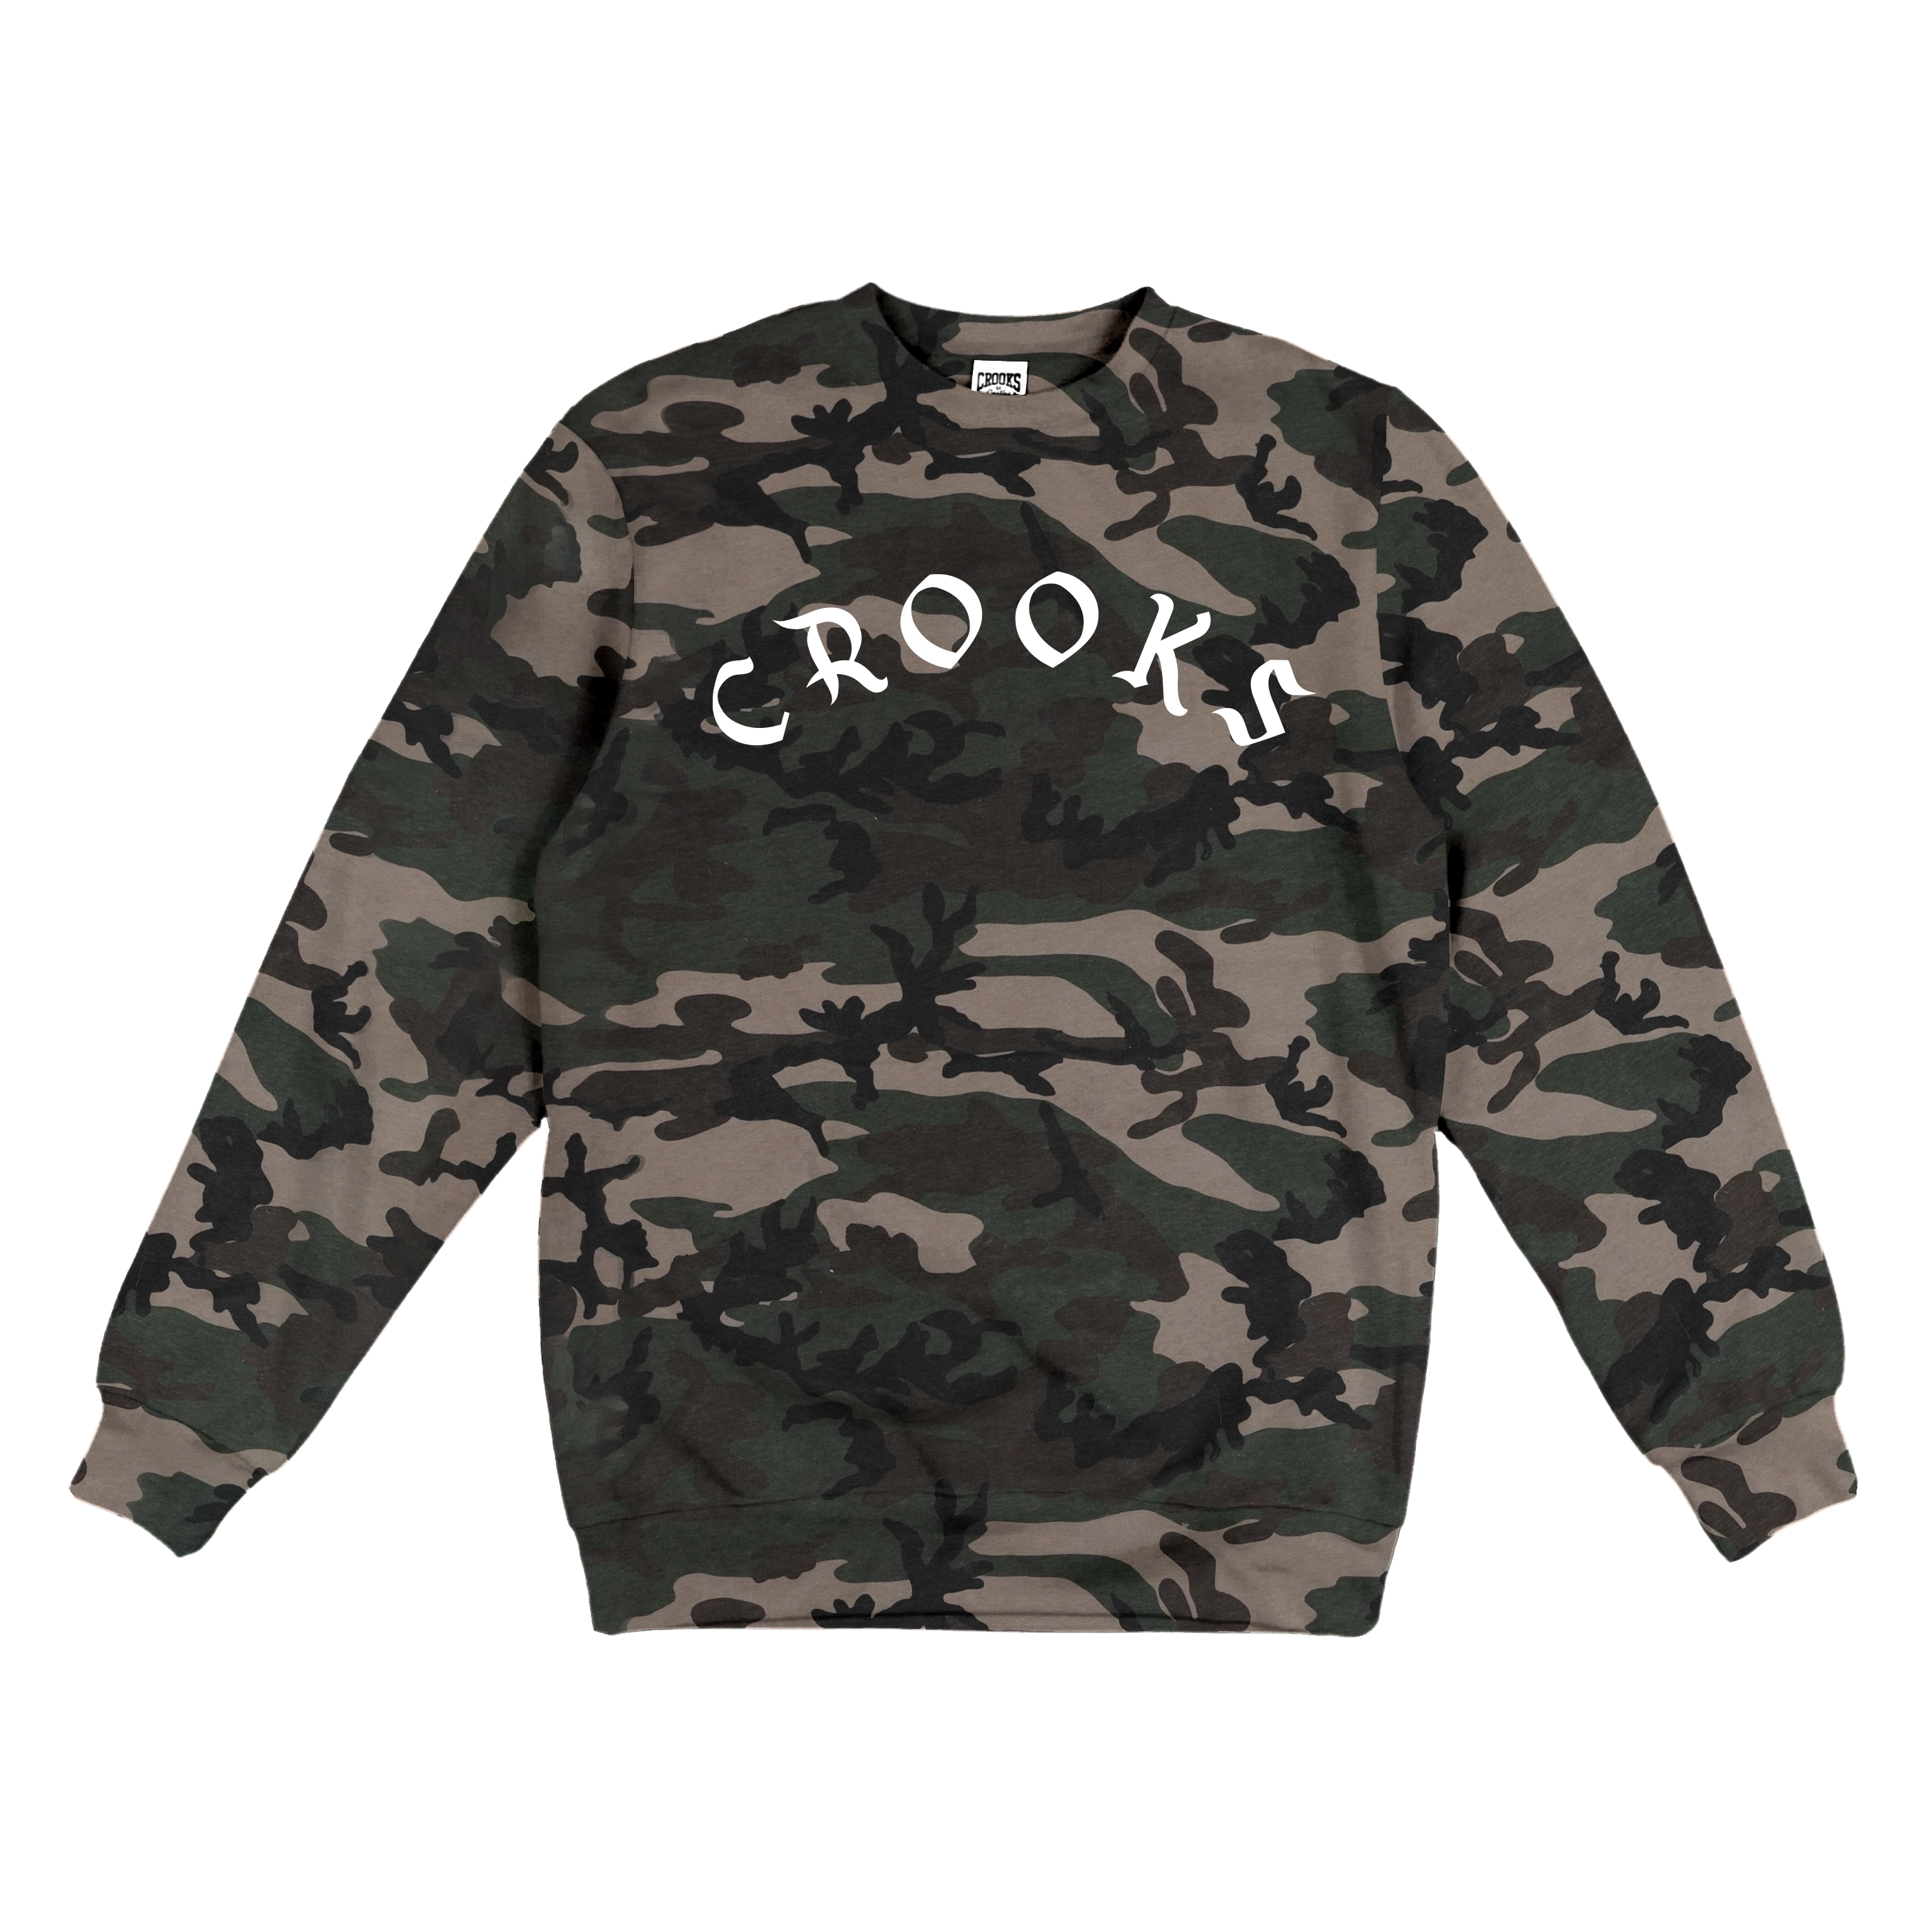 Crooks Cherub Sweatshirt